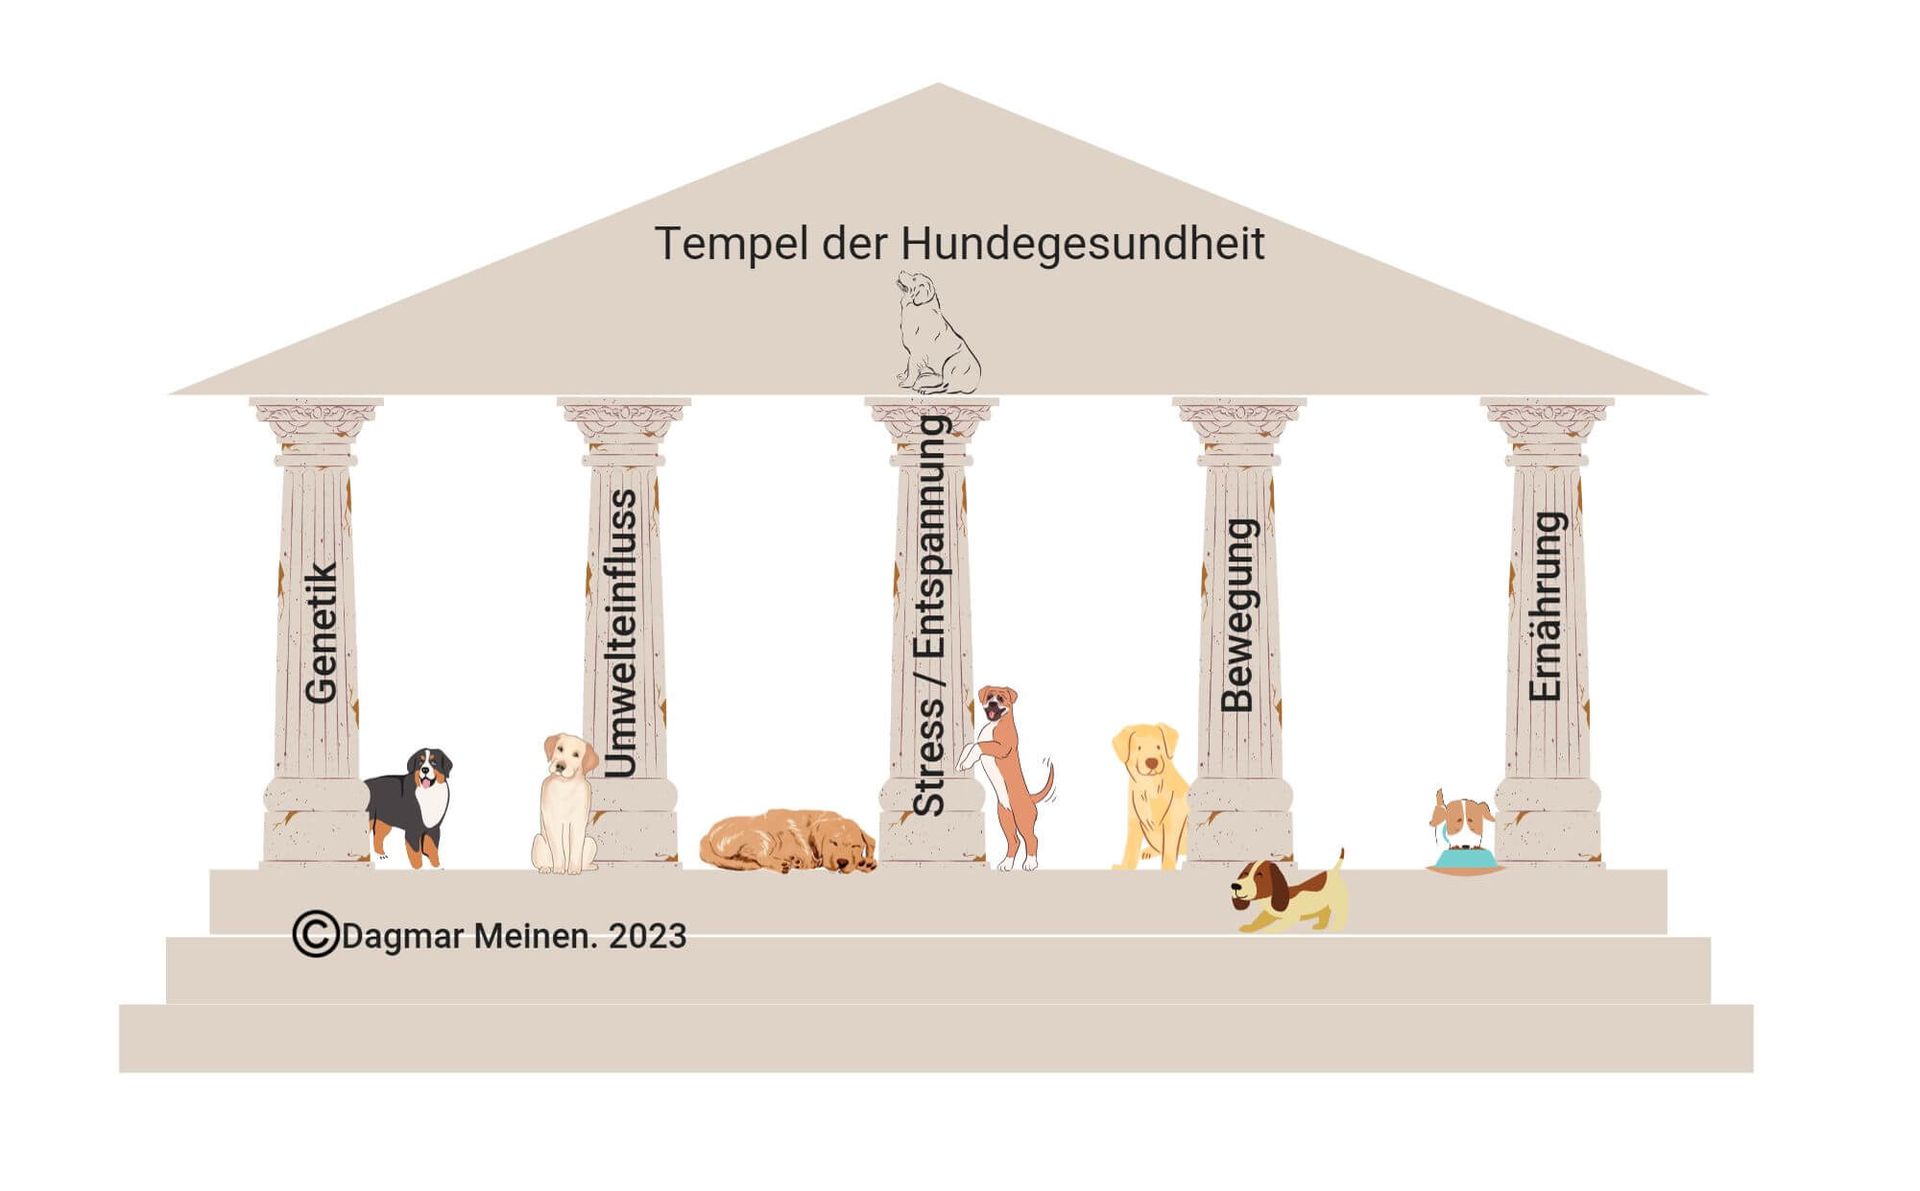 Ein Tempel mit fünf Säulen. Davor eine Treppe mit drei Stufen und ein dreieckiges Dach darüber. Im Dachgiebel steht: Tempel der Hundegesundheit. Unter der Schrift sitzt ein Hund. Auf den einzelnen Säulen steht geschrieben: Genetik, Umwelteinfluss, Stress und Entspannung, Bewegung, Ernährung. Zwischen den Säulen befinden sich Hunde.